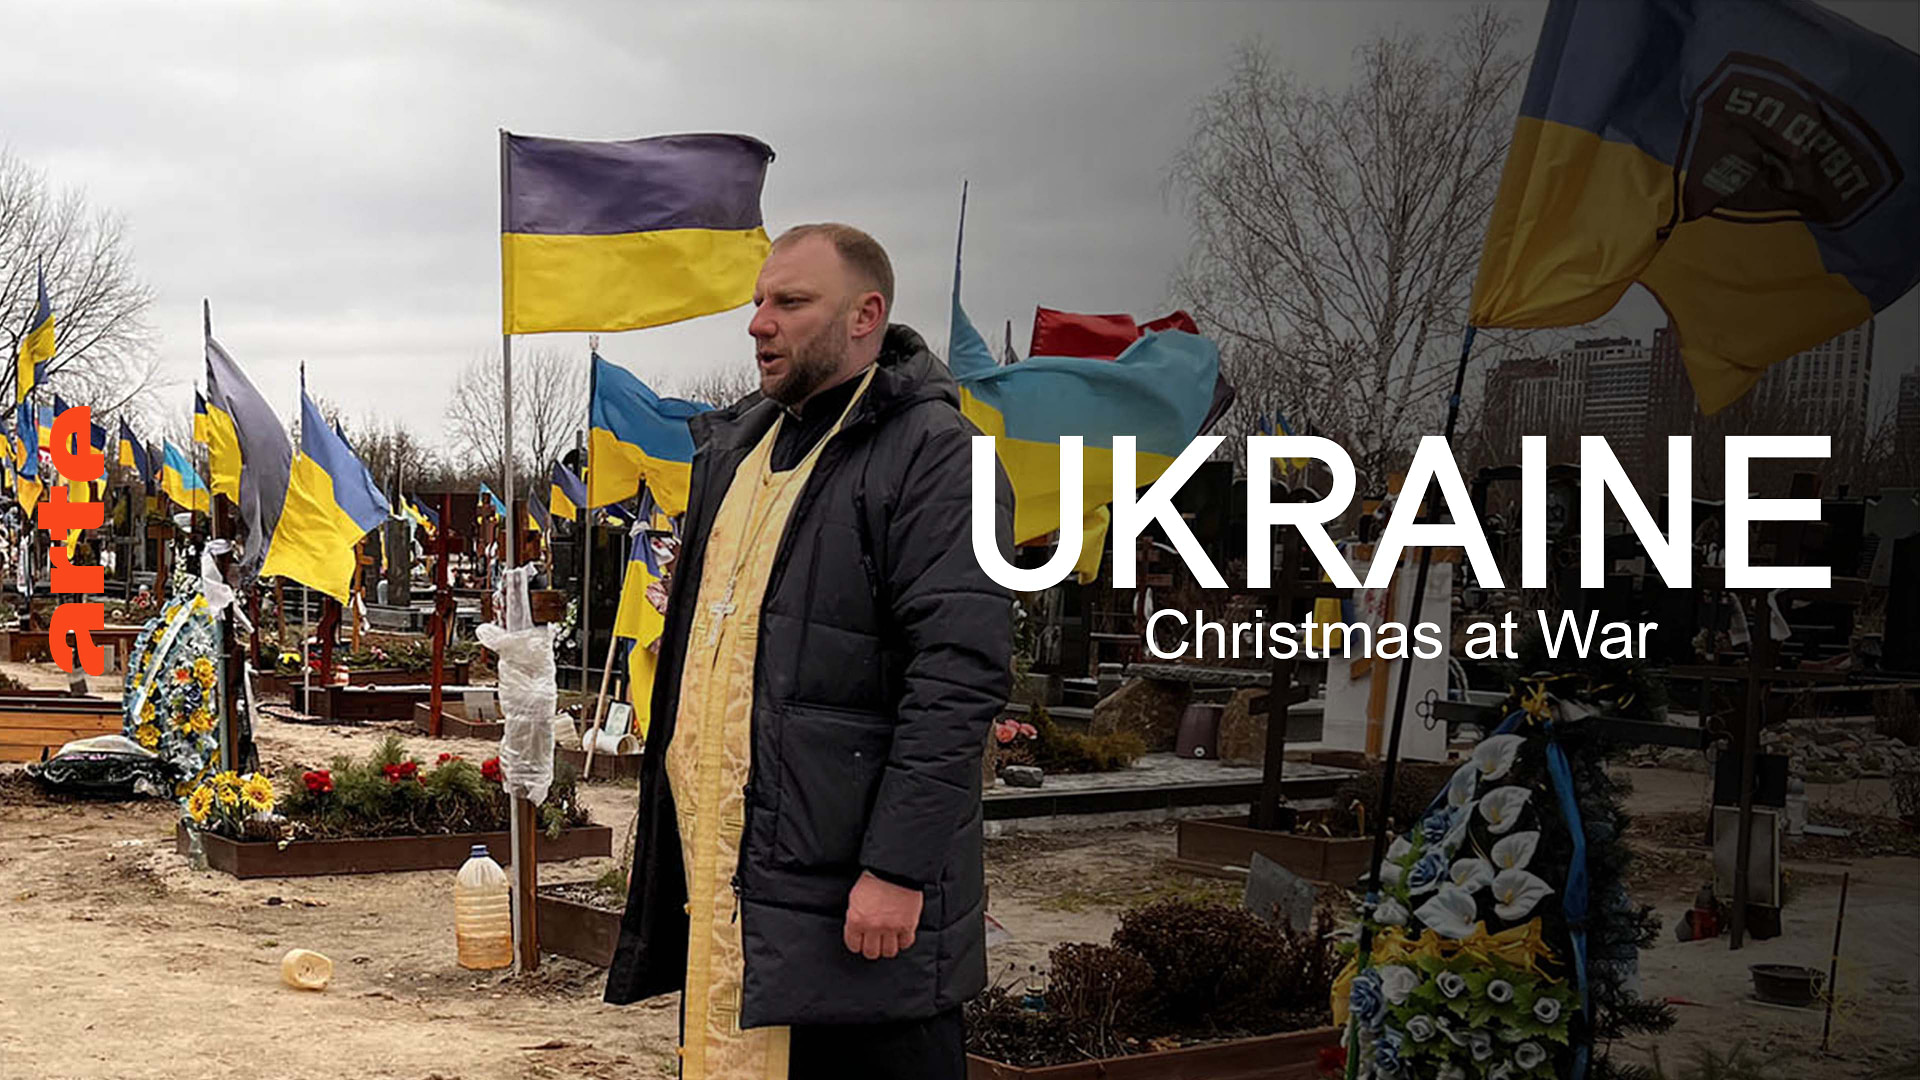 Ukraine: An Weihnachten ist Krieg